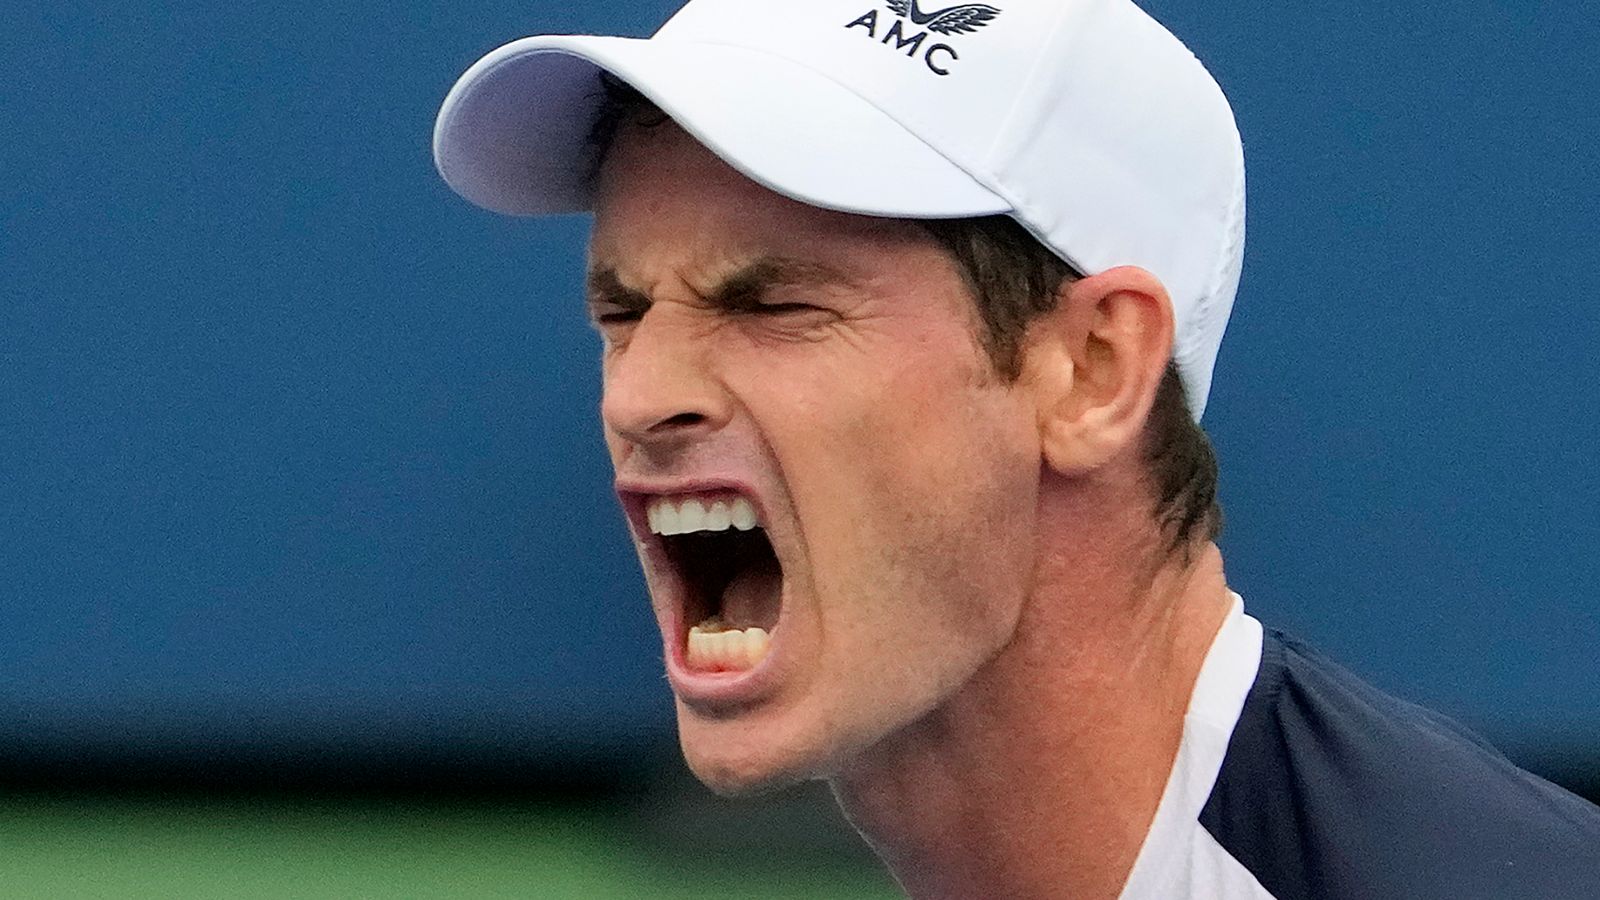 US Open: Andy Murray perfektne odštartoval kampaň v New Yorku, keďže Cameron Norrie tiež vyhral |  Tenisové novinky